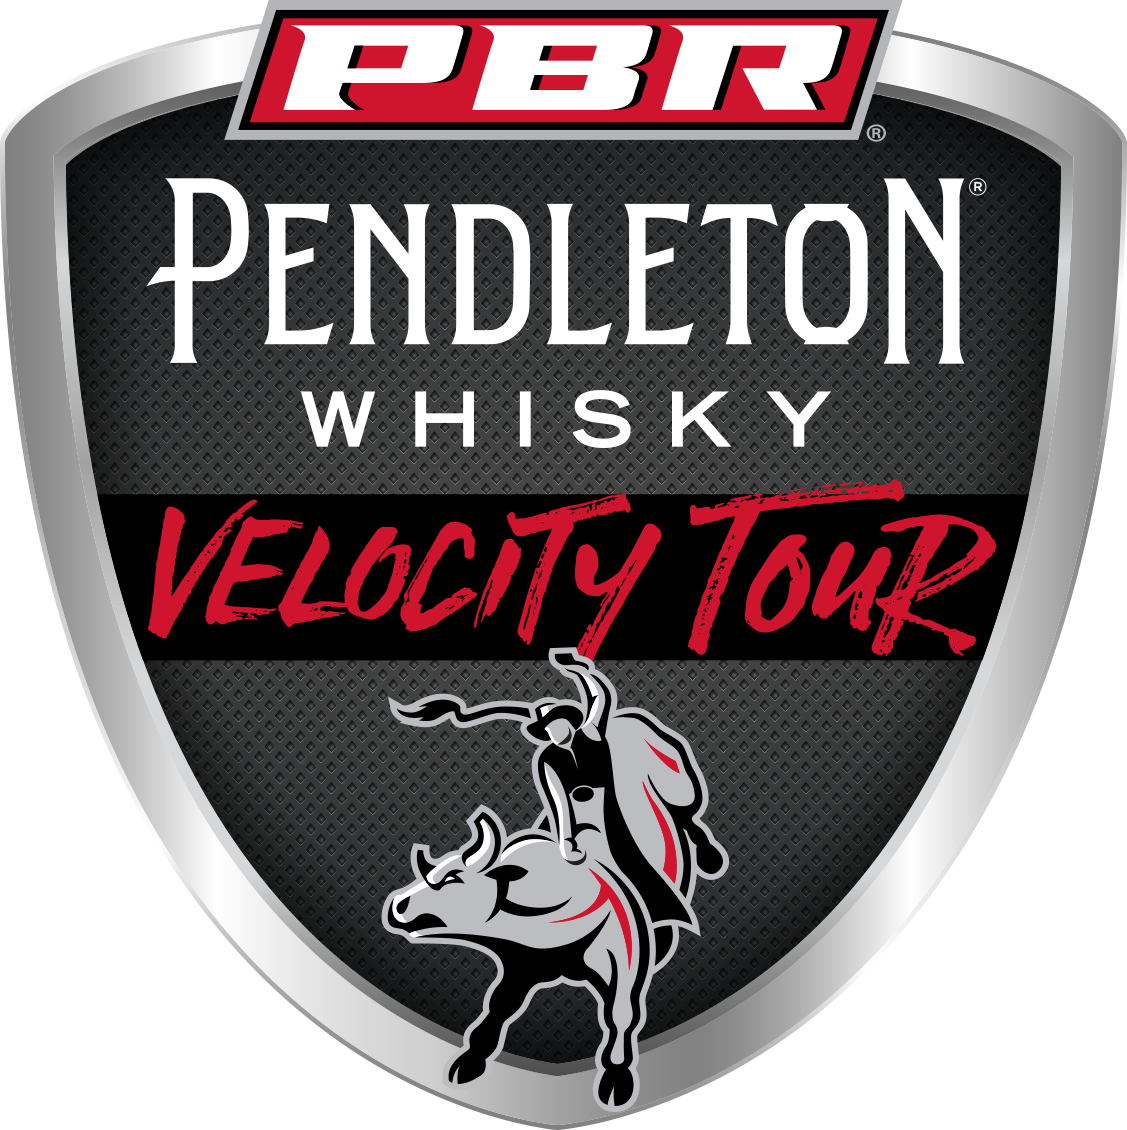 pbr velocity tour schedule 2023